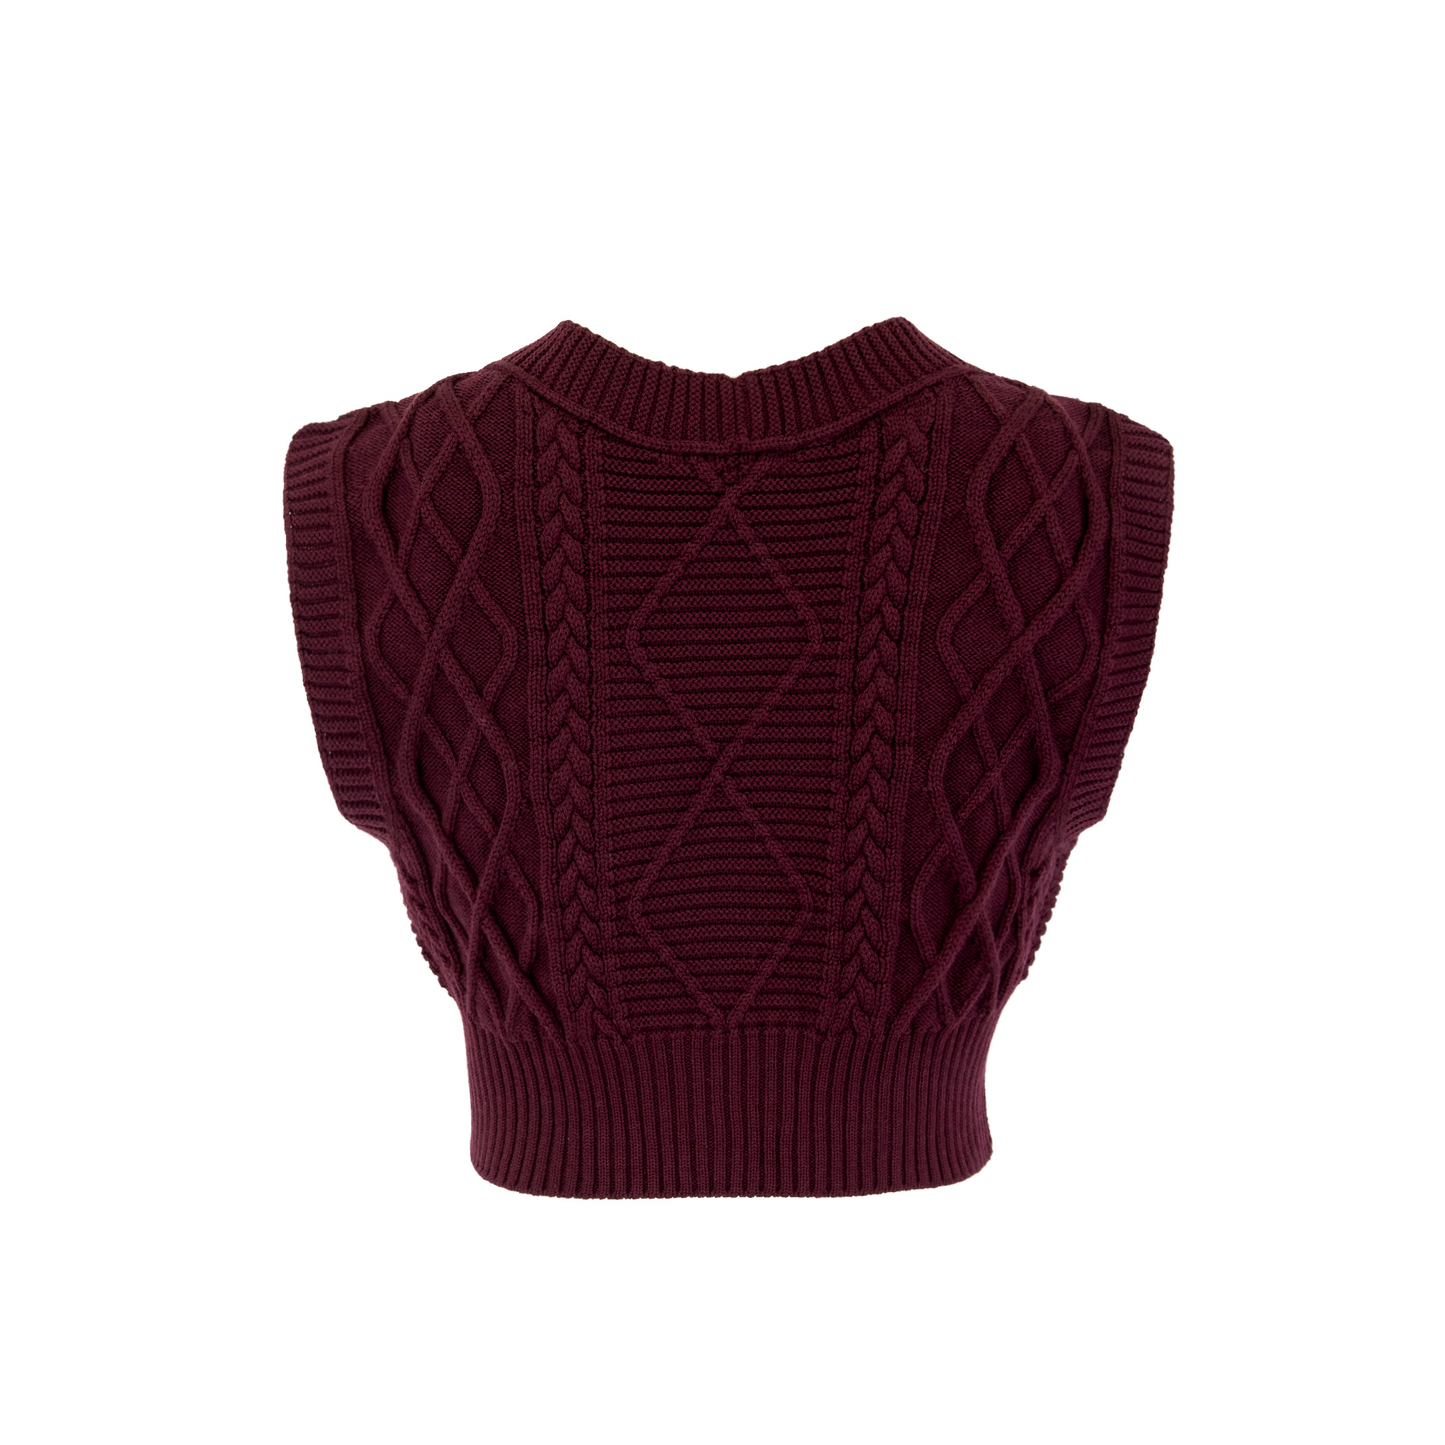 Nora Merino Wool Cropped Sweater Vest - Vino